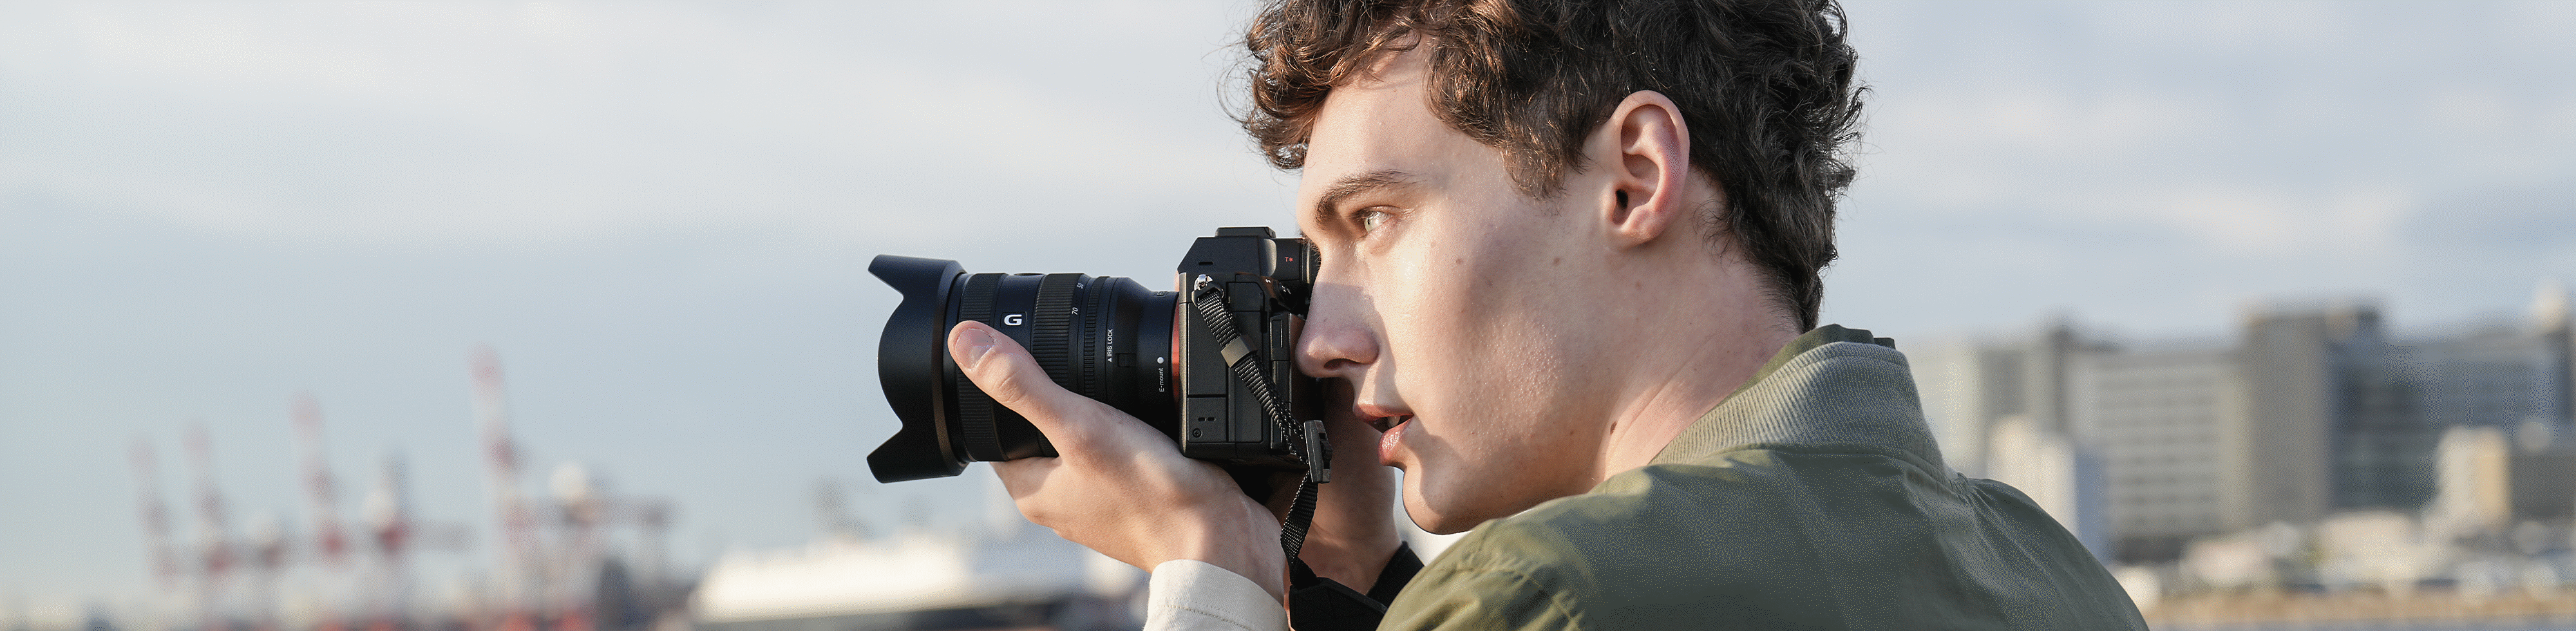 Φωτογράφιση ανθρώπων σε παραθαλάσσια τοποθεσία με τη χειροκίνητη φωτογραφική μηχανή, με χρήση viewfinder